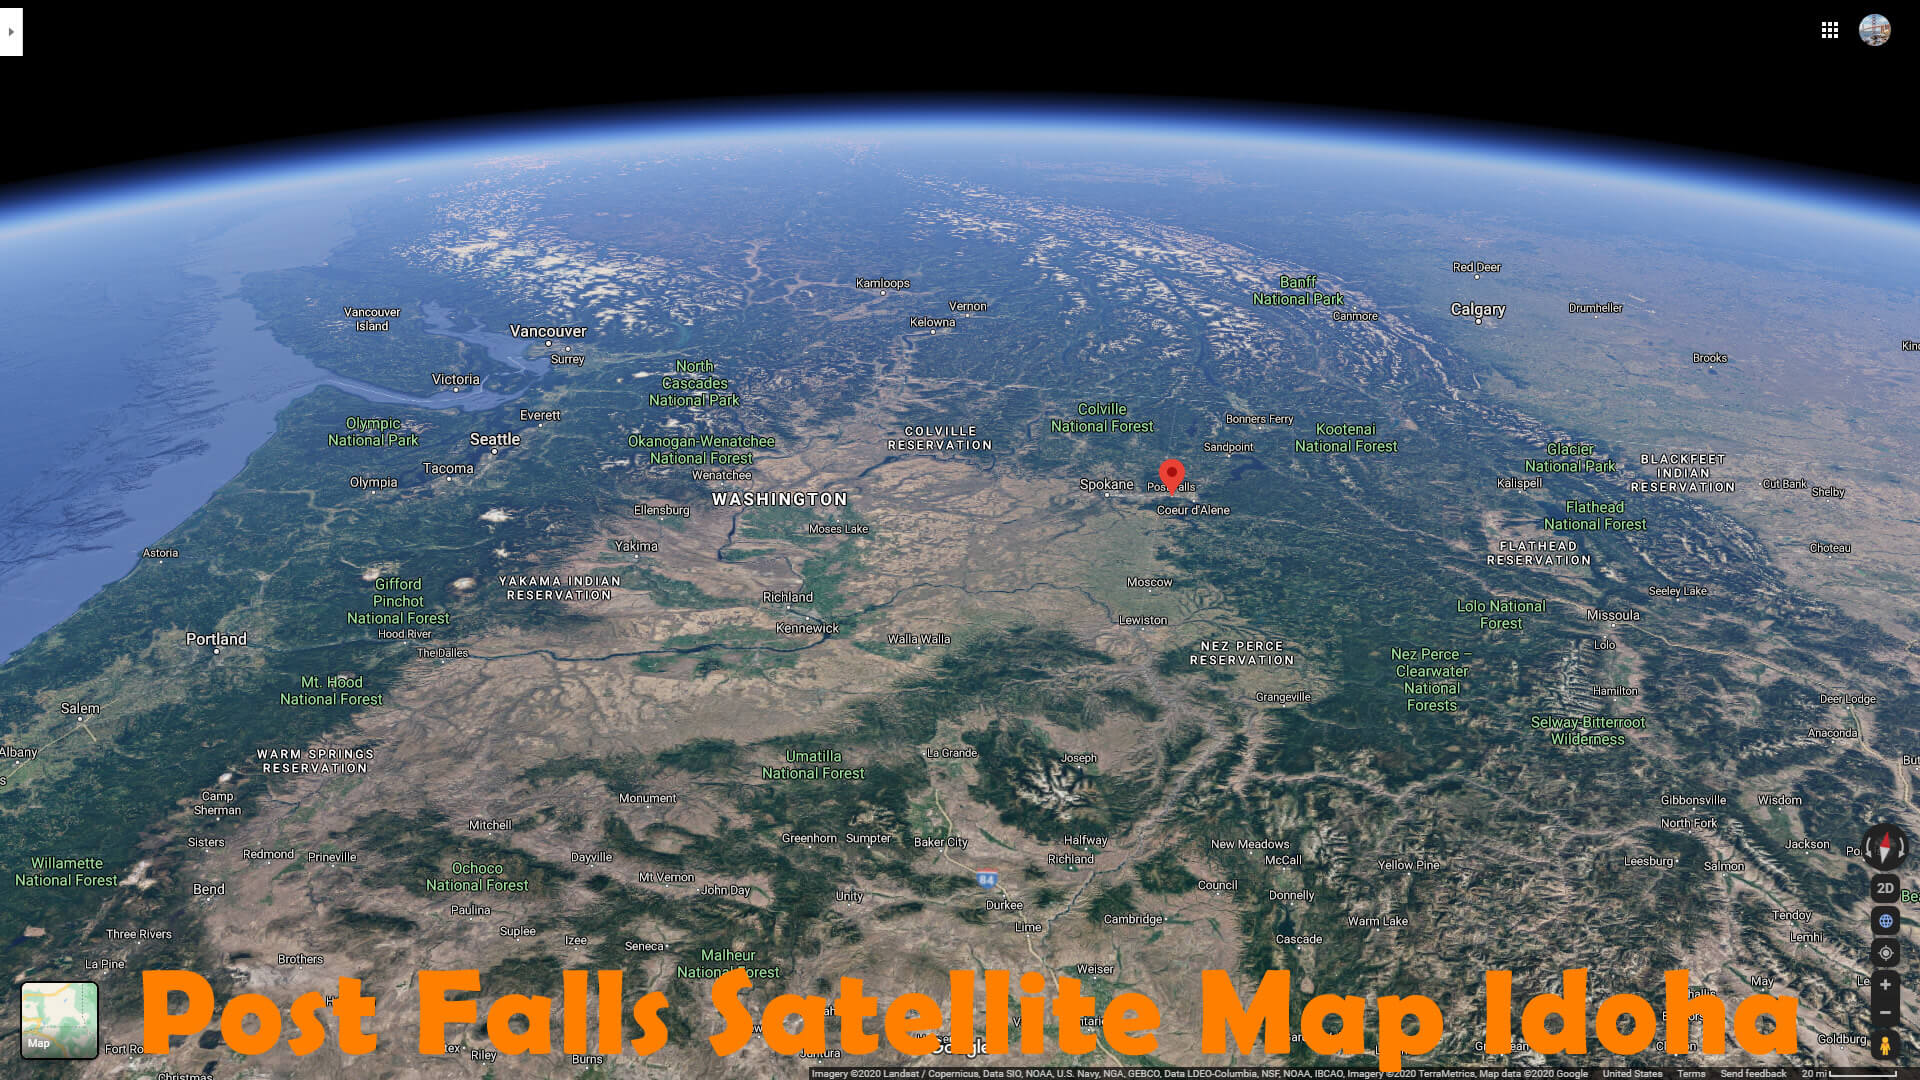 Post Falls Satellite Map Idoha